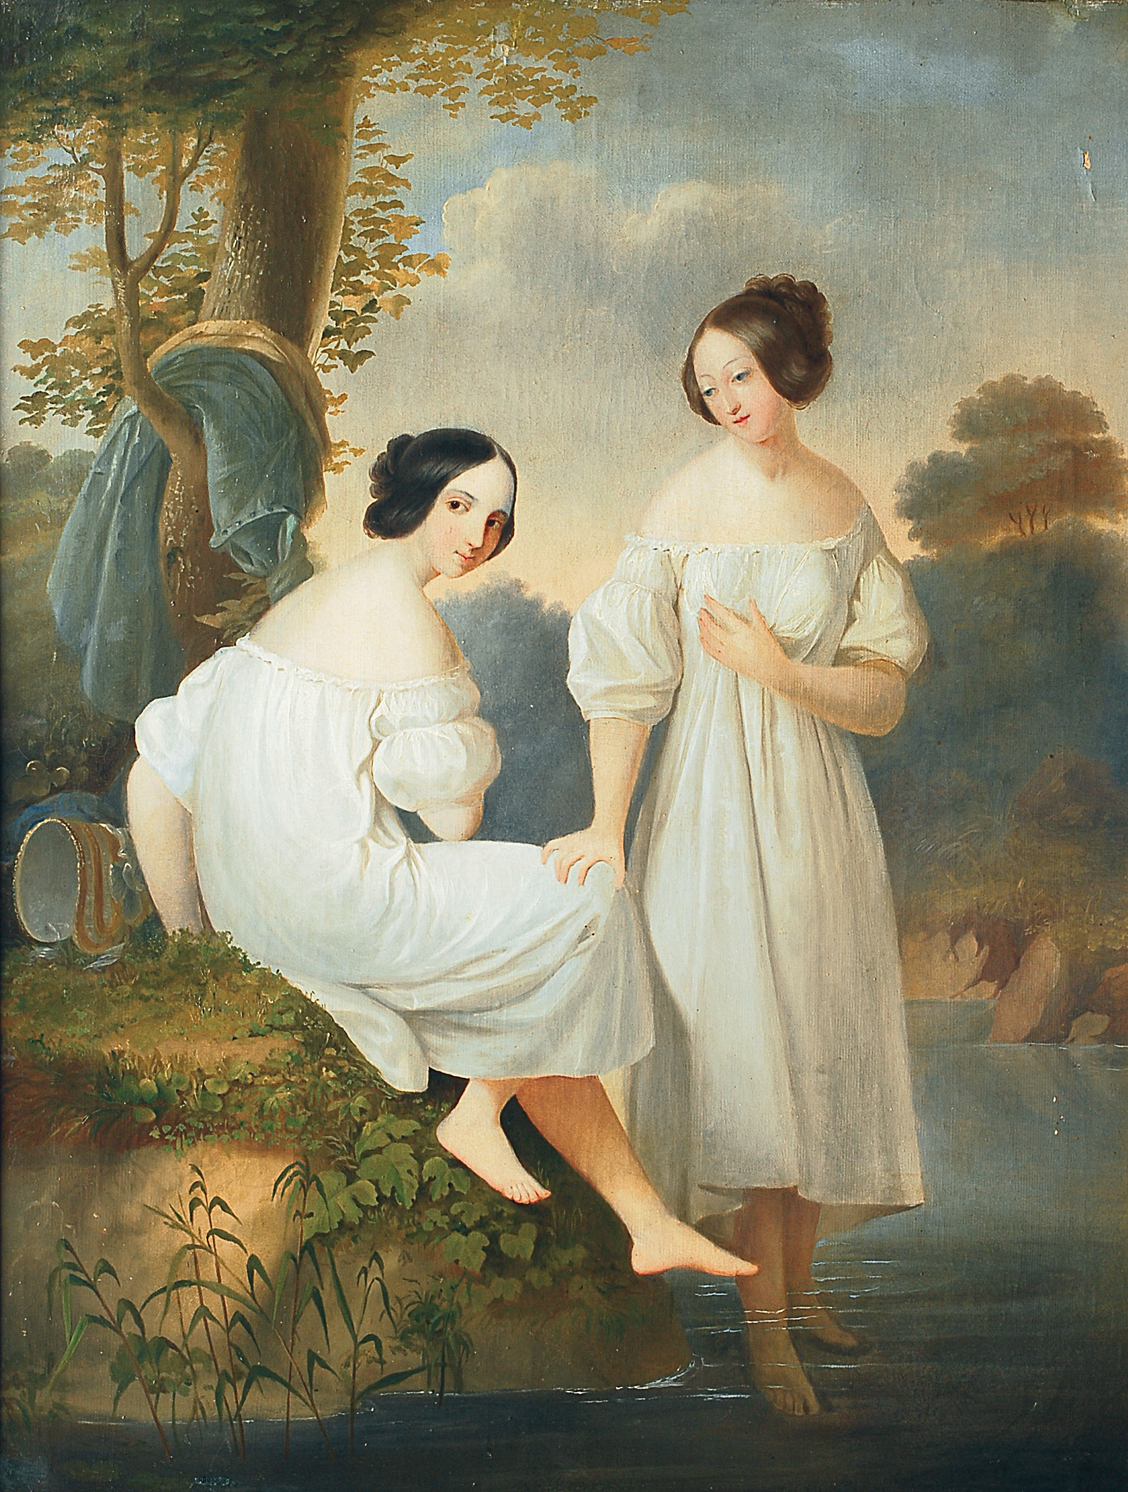 Two bathing women